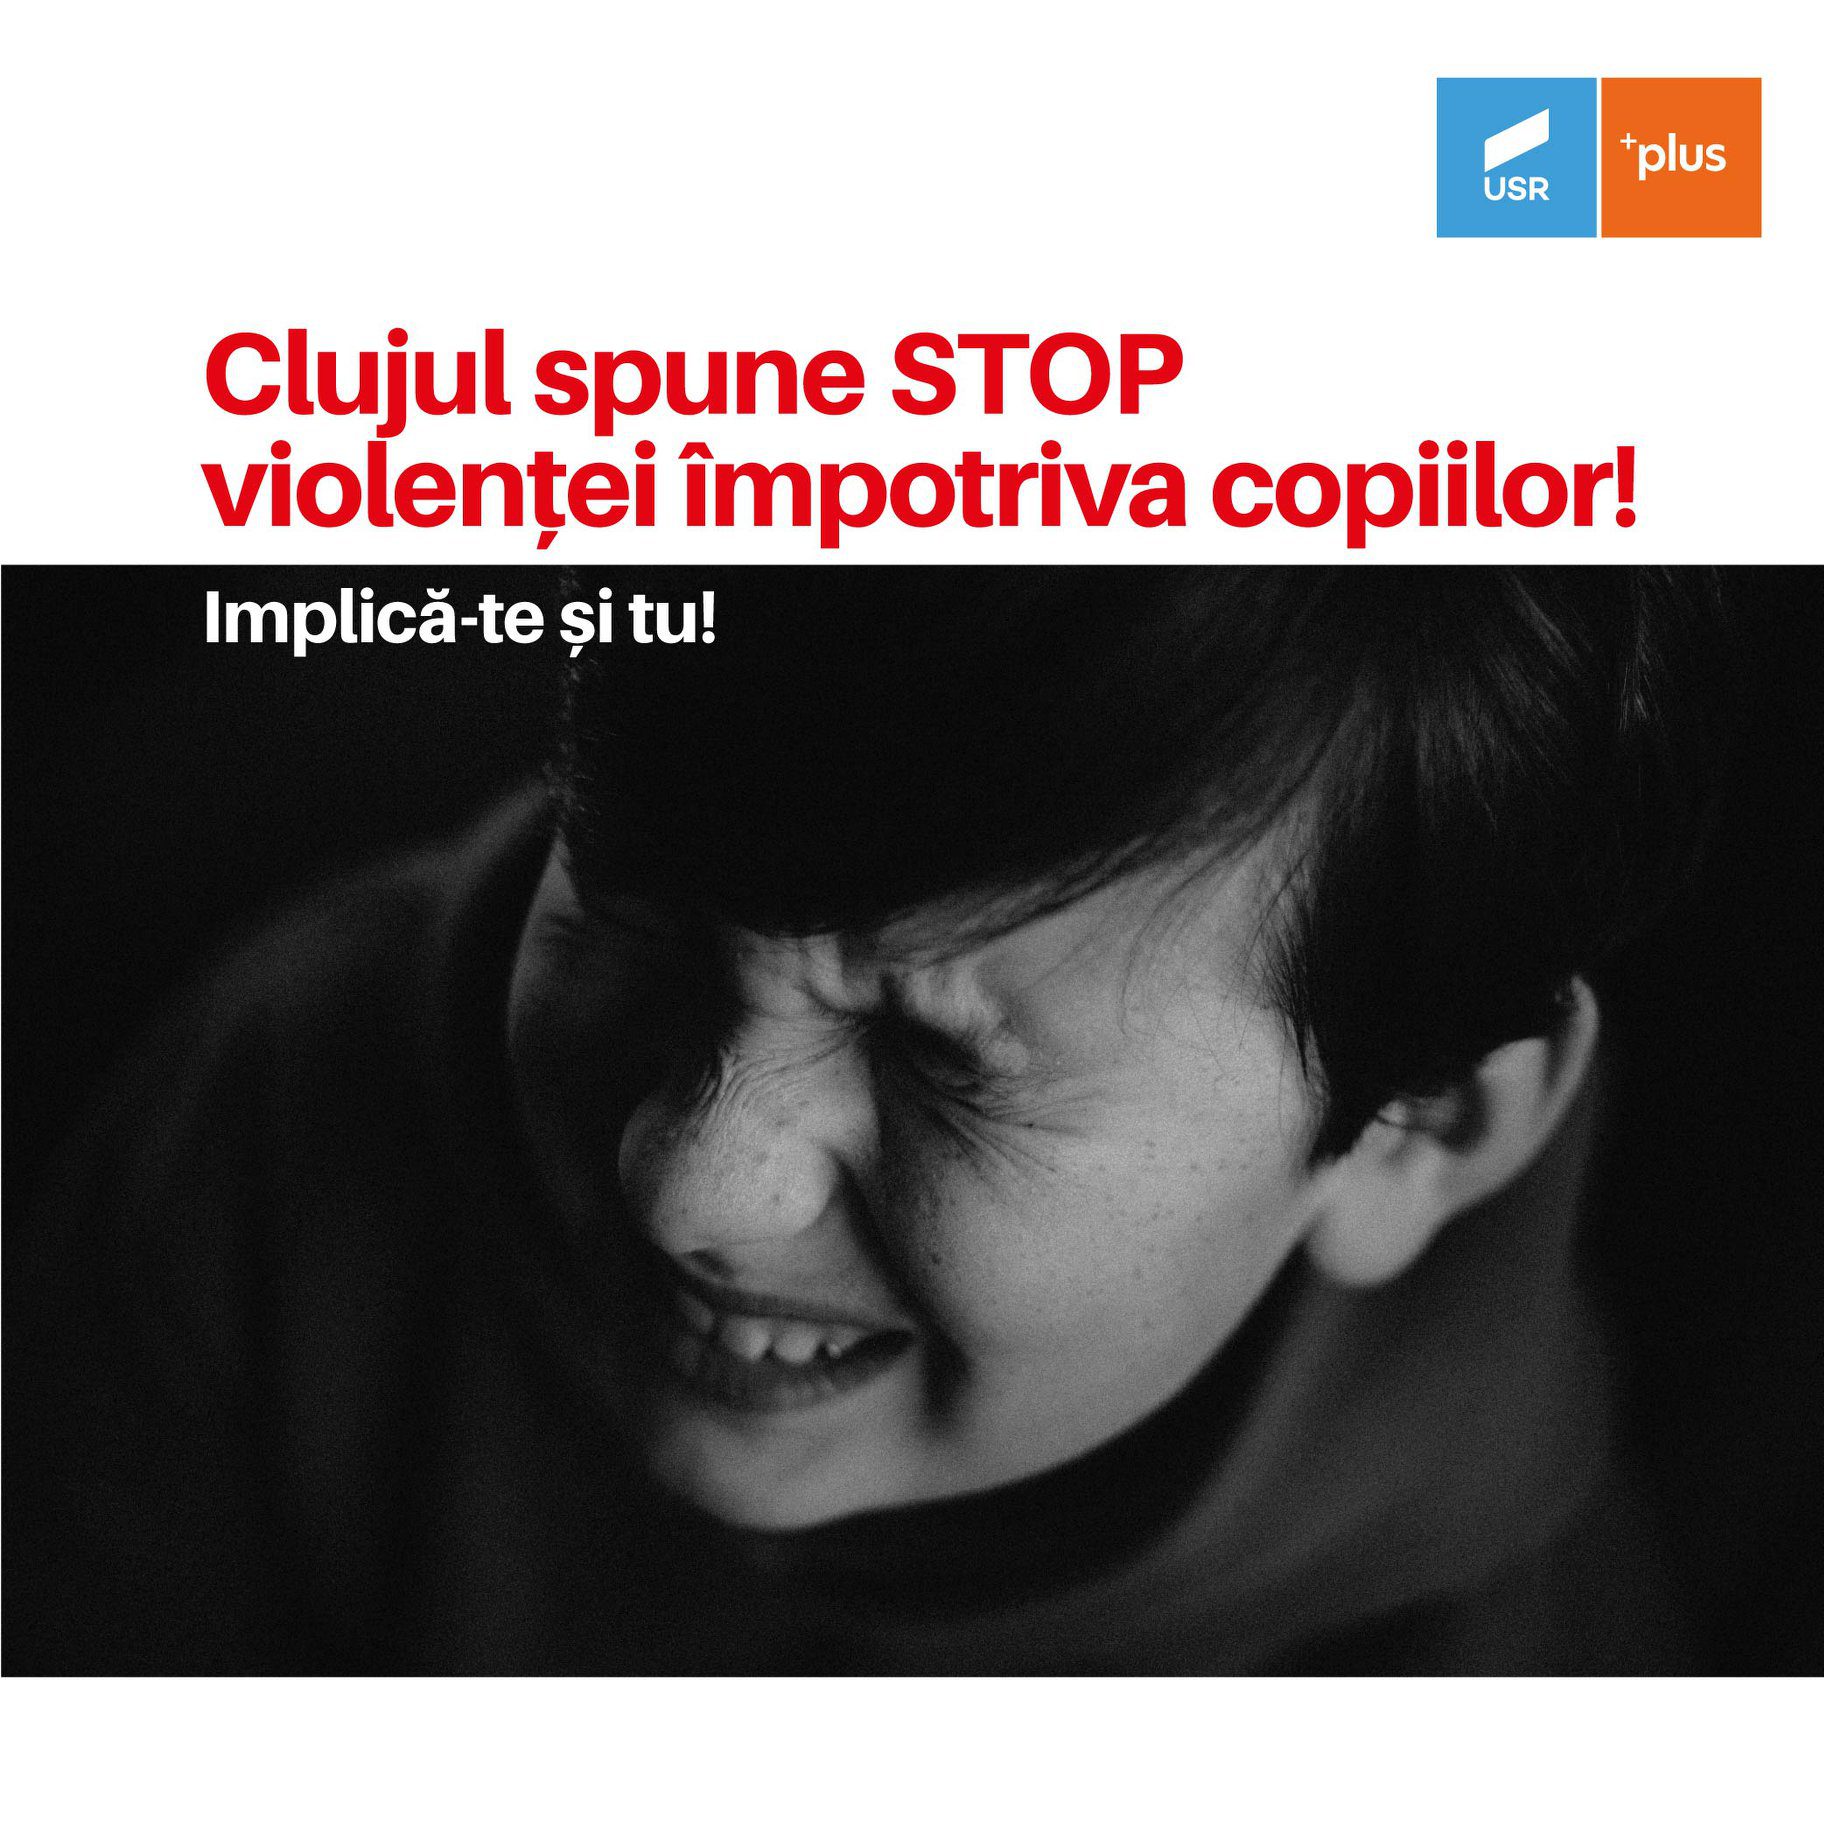 Clujul spune STOP violenței împotriva copiilor